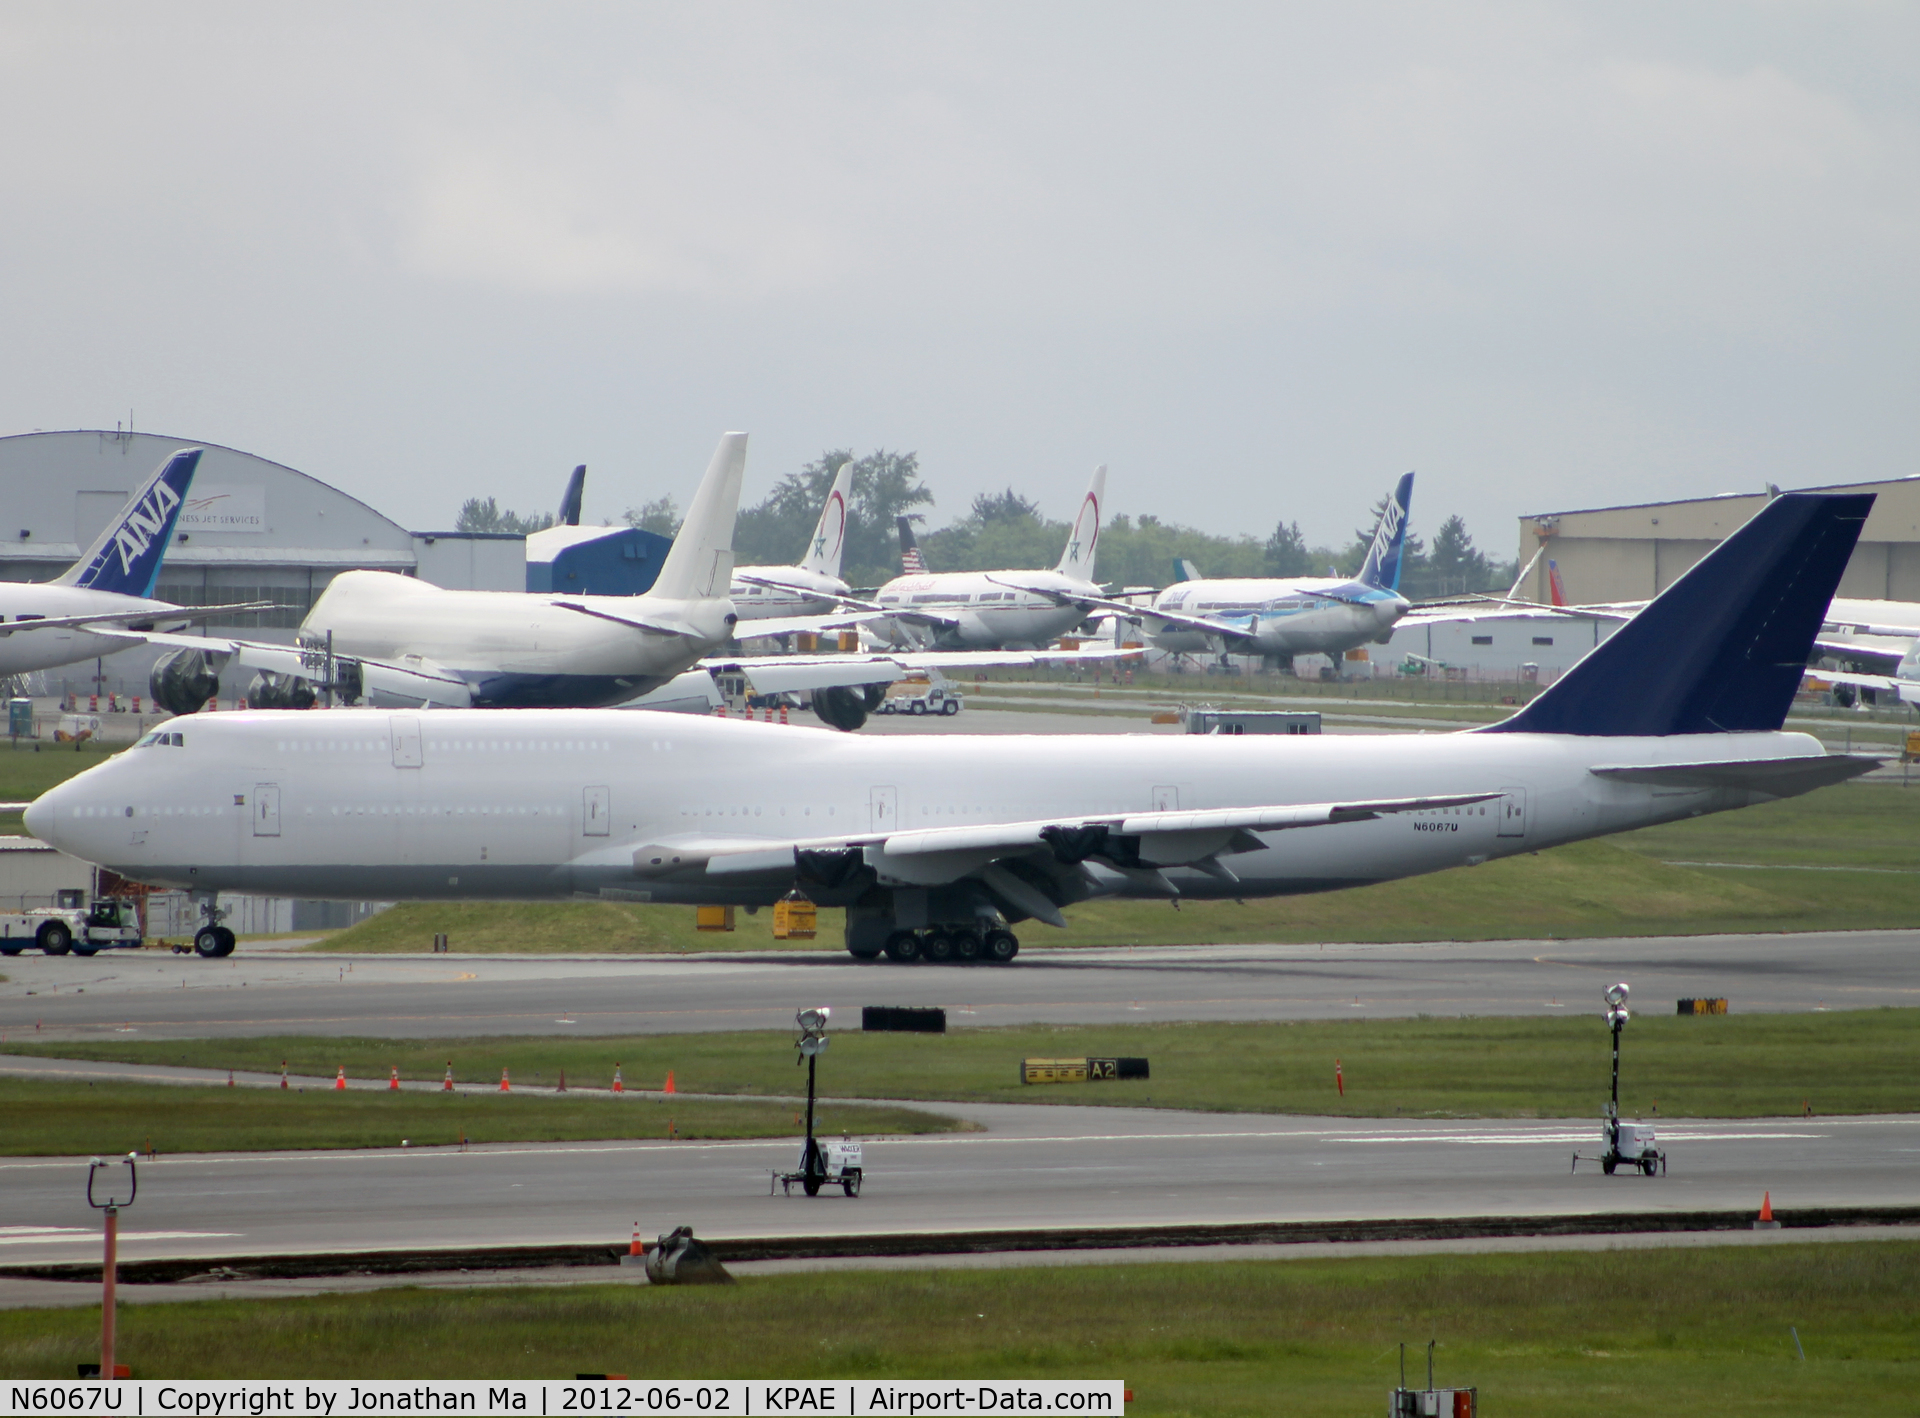 N6067U, 2011 Boeing 747-830 C/N 37826, N6067U is now without engines